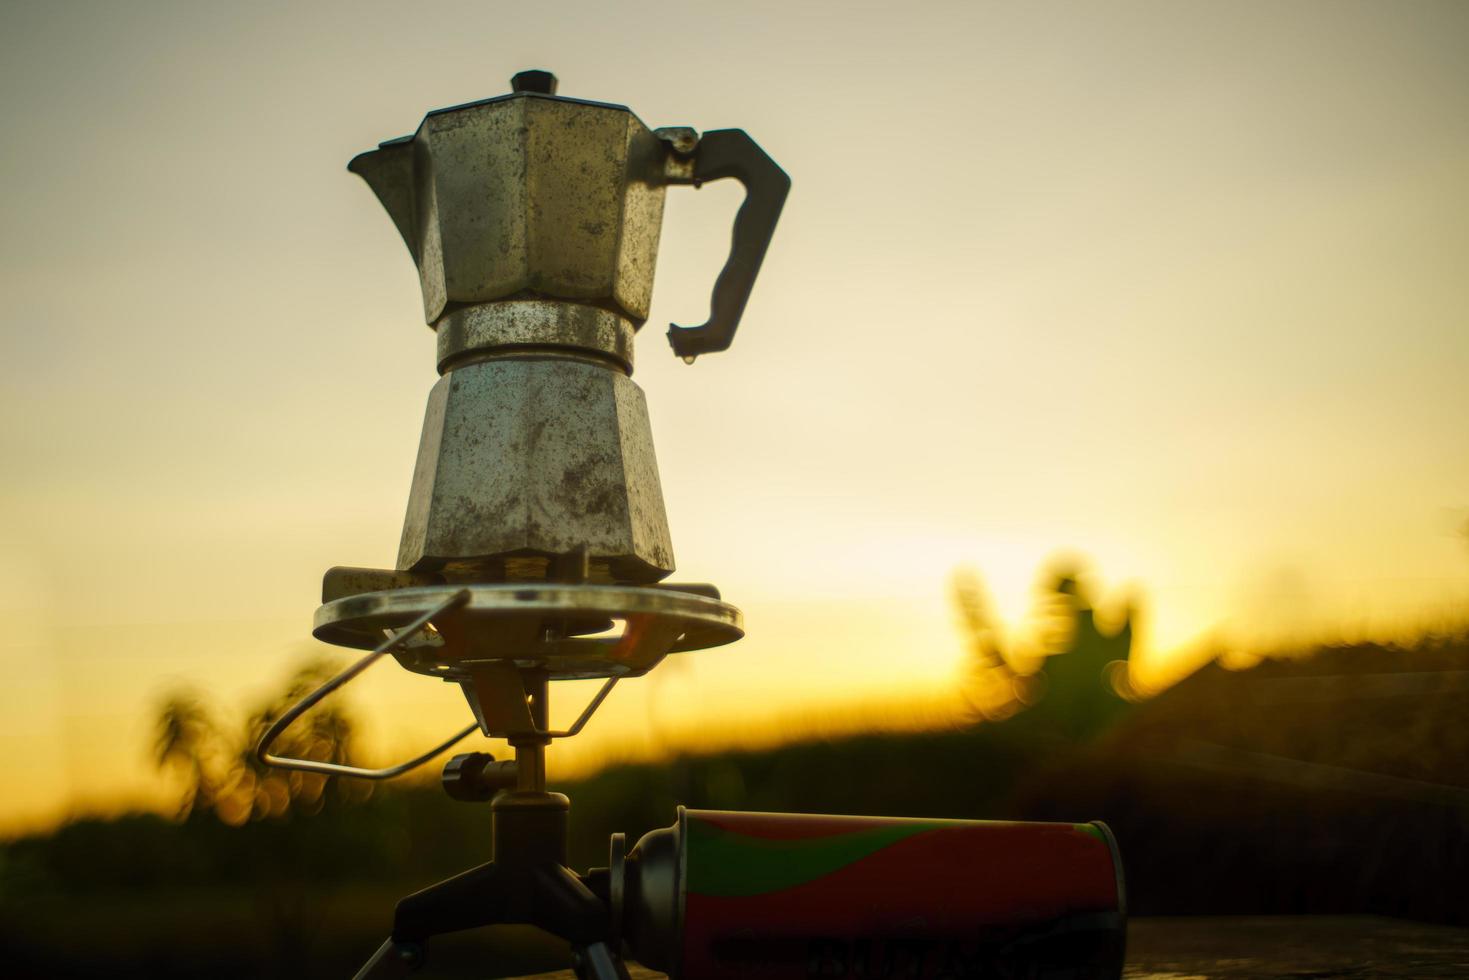 antieke koffiepot op het gasfornuis om te kamperen als de zon 's ochtends opkomt. Soft focus. foto